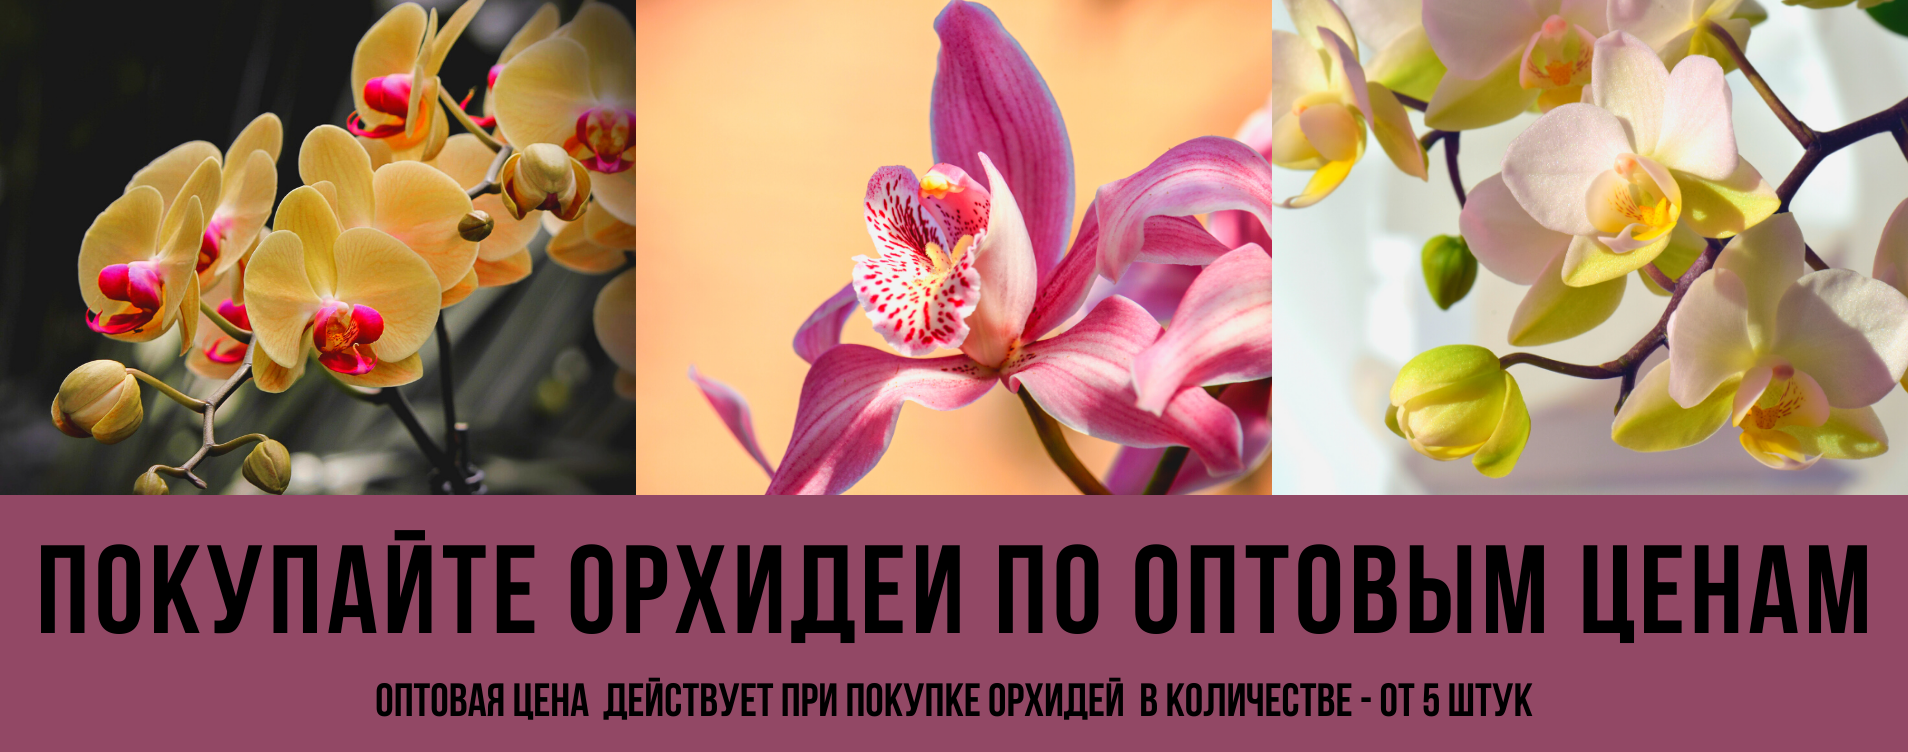 Доставка орхидей по россии